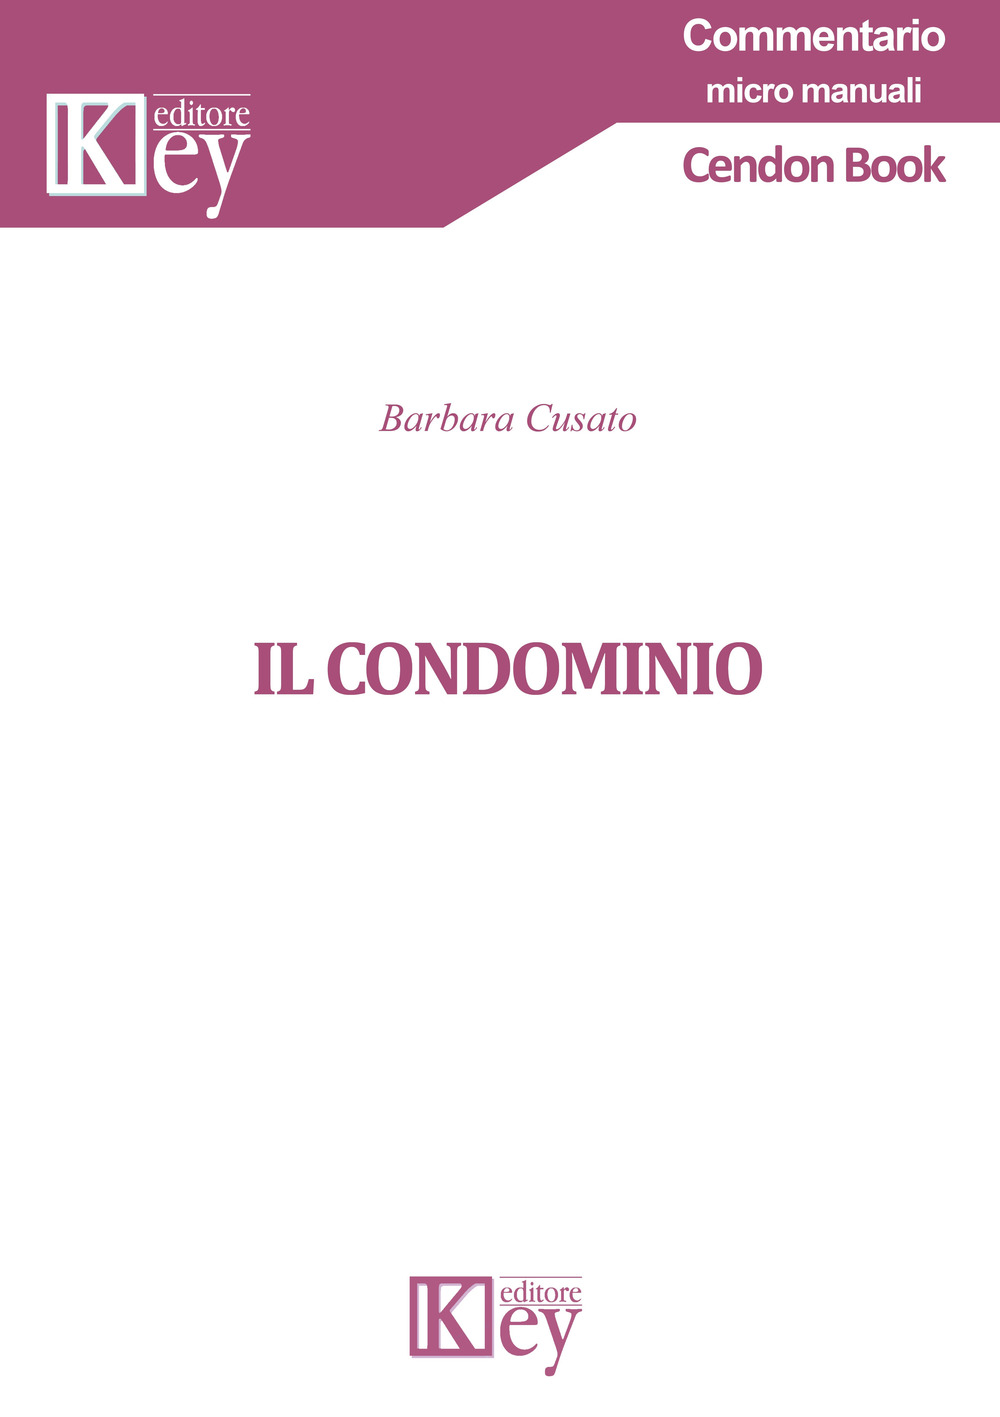 Libri Barbara Cusato - Il Condominio NUOVO SIGILLATO, EDIZIONE DEL 10/10/2019 SUBITO DISPONIBILE